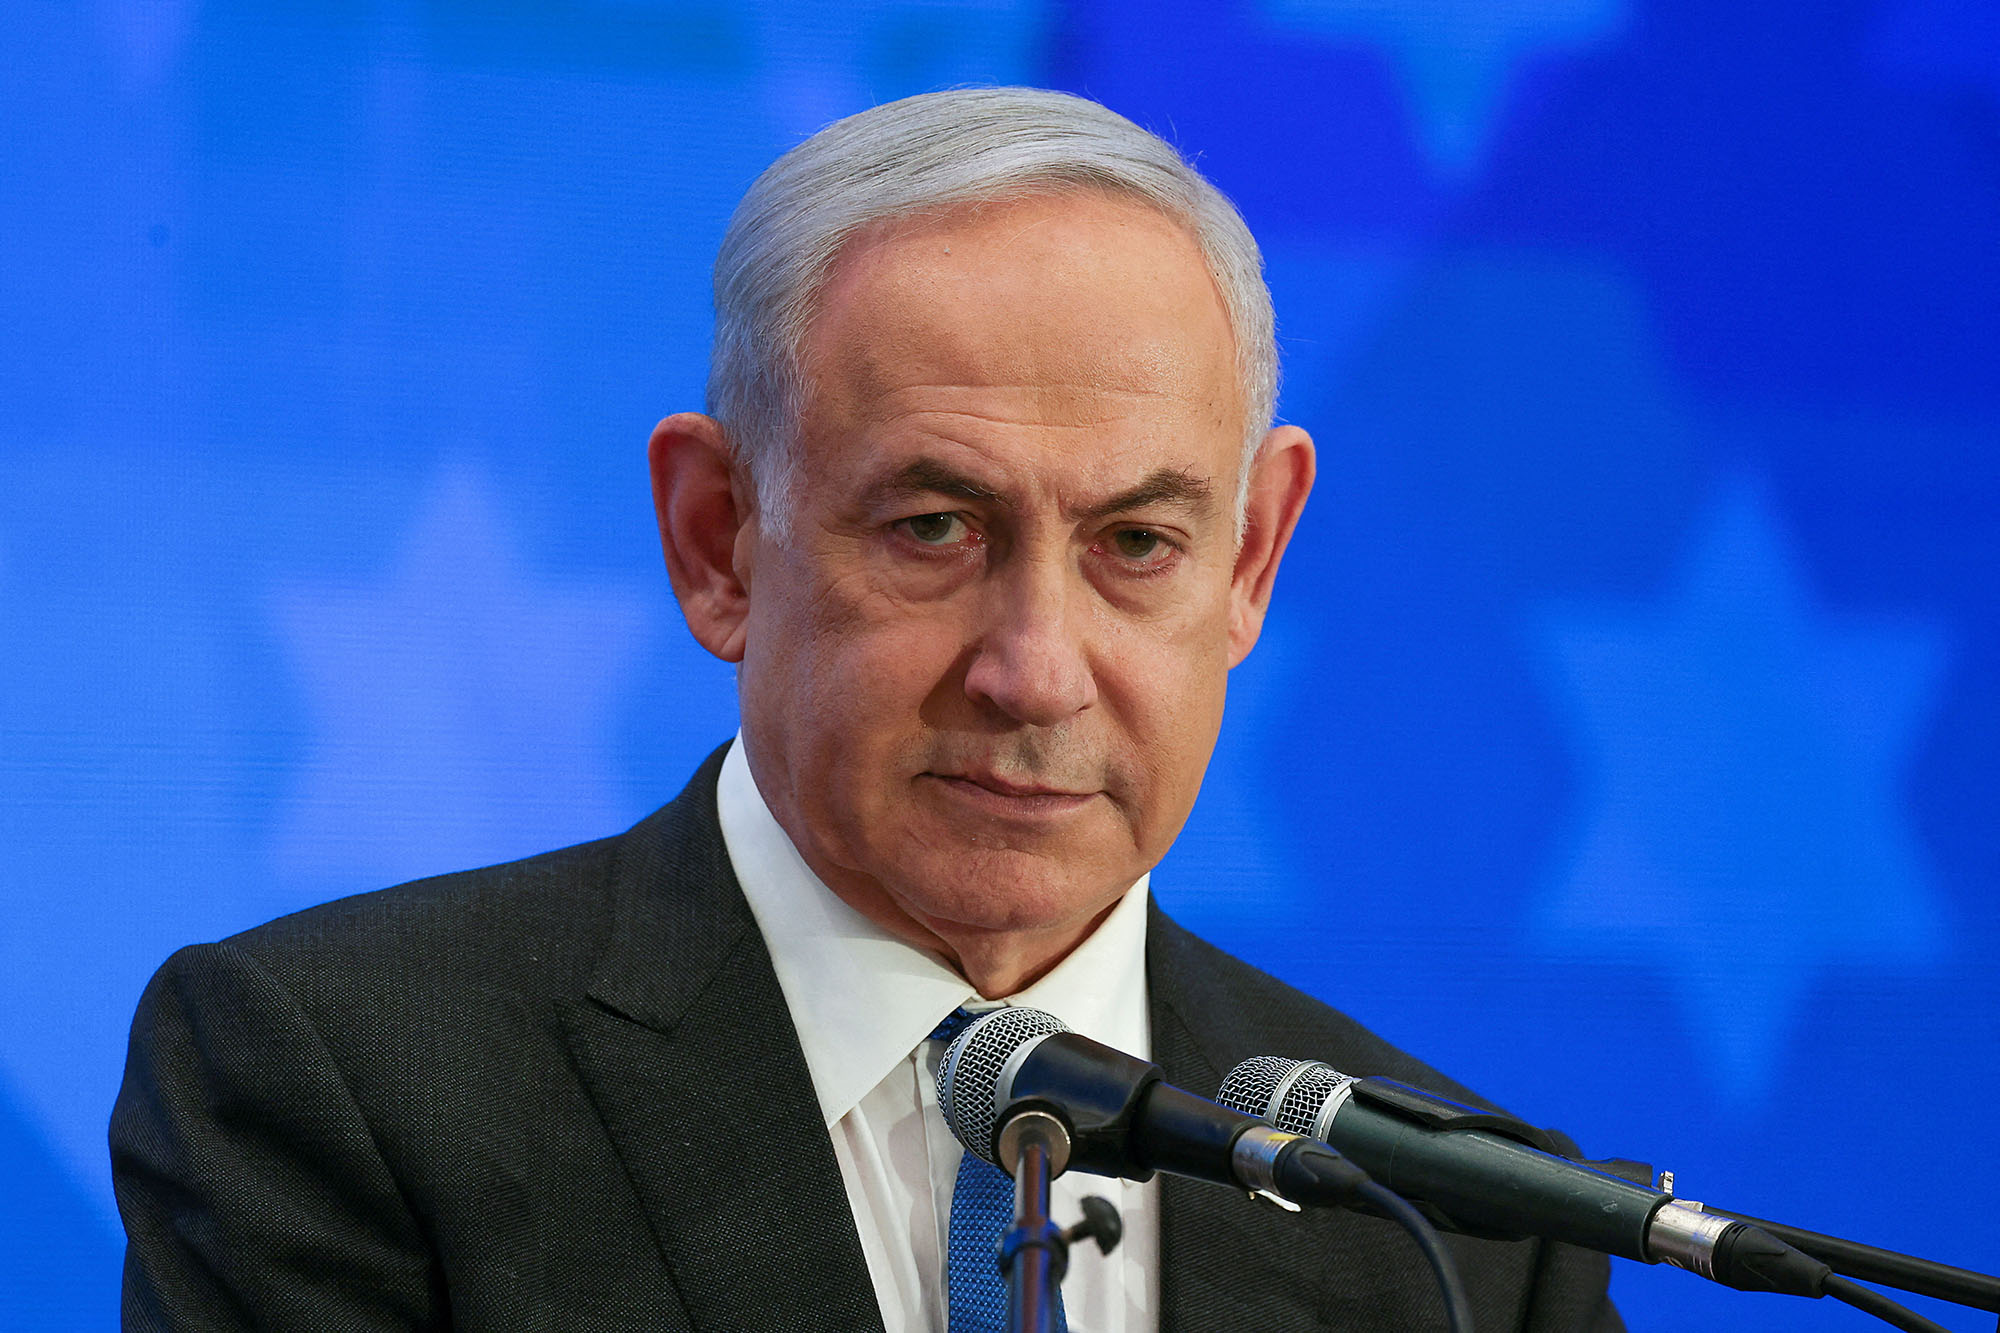 Izraeli shqyrton reagimin ndaj Iranit ndërsa SHBA-të kërkojnë vetëpërmbajtje